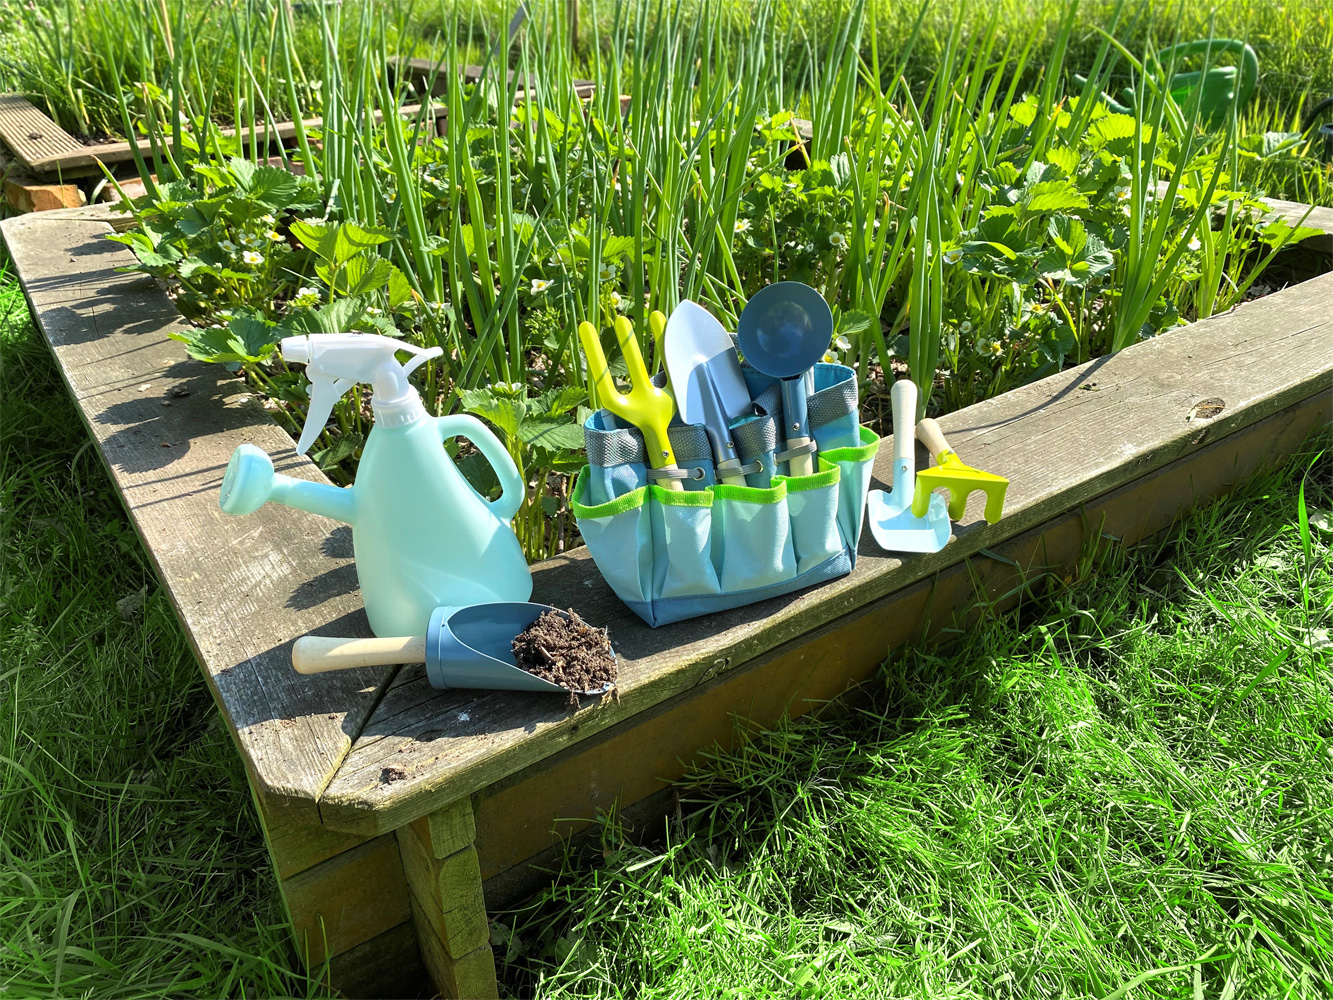 Sac de jardinage avec outils pour enfant - Outils de jardinage -  Aménagement de jardin - Jardin et Plein air